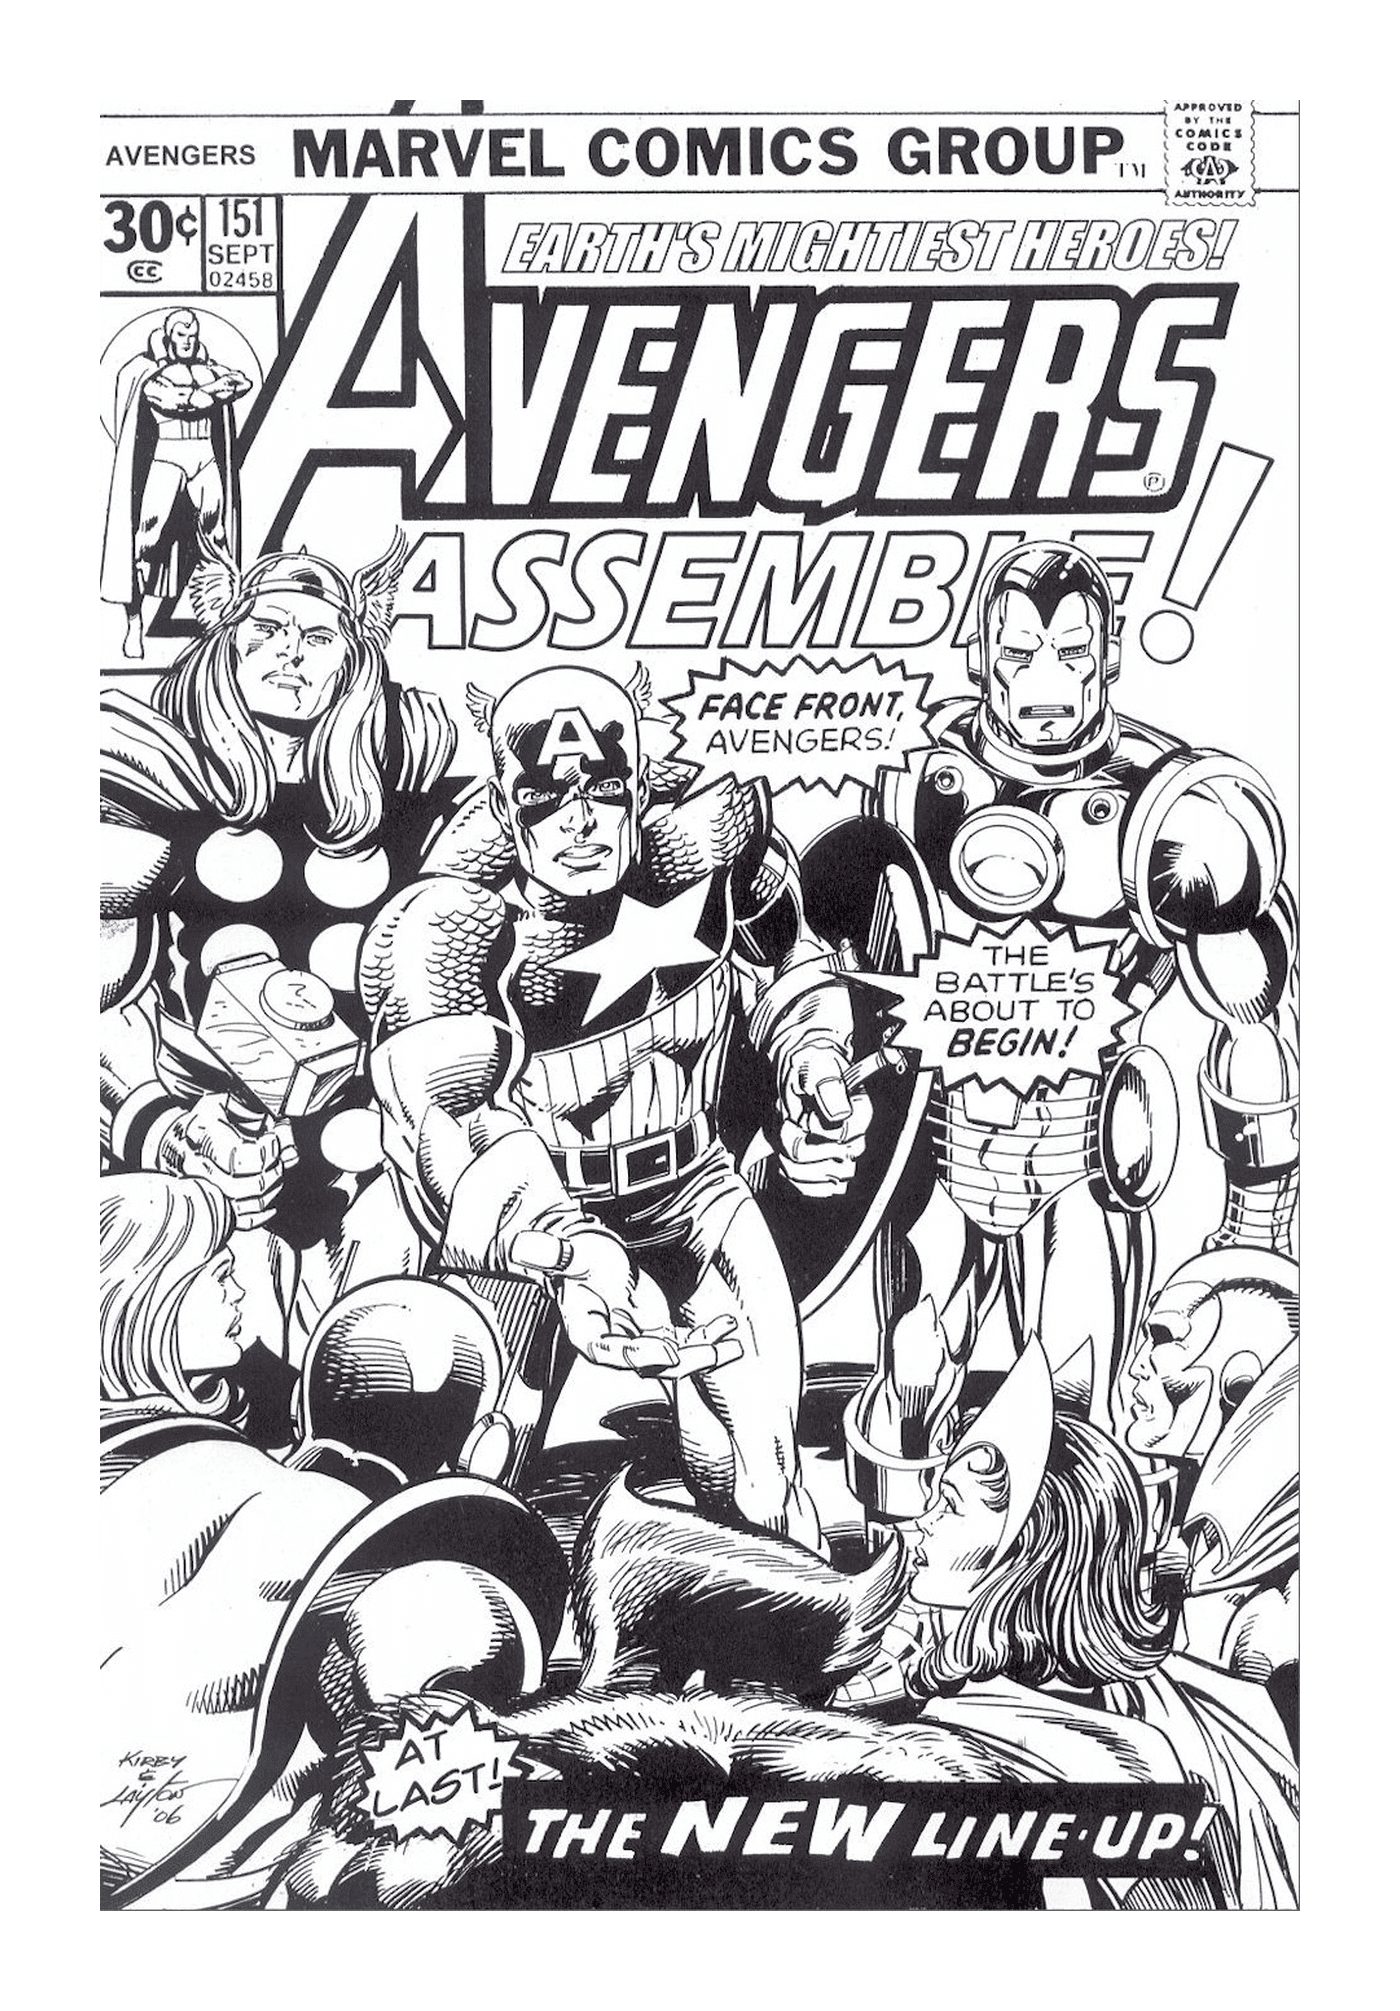  Capa da Marvel Comics com um grupo de super-heróis 